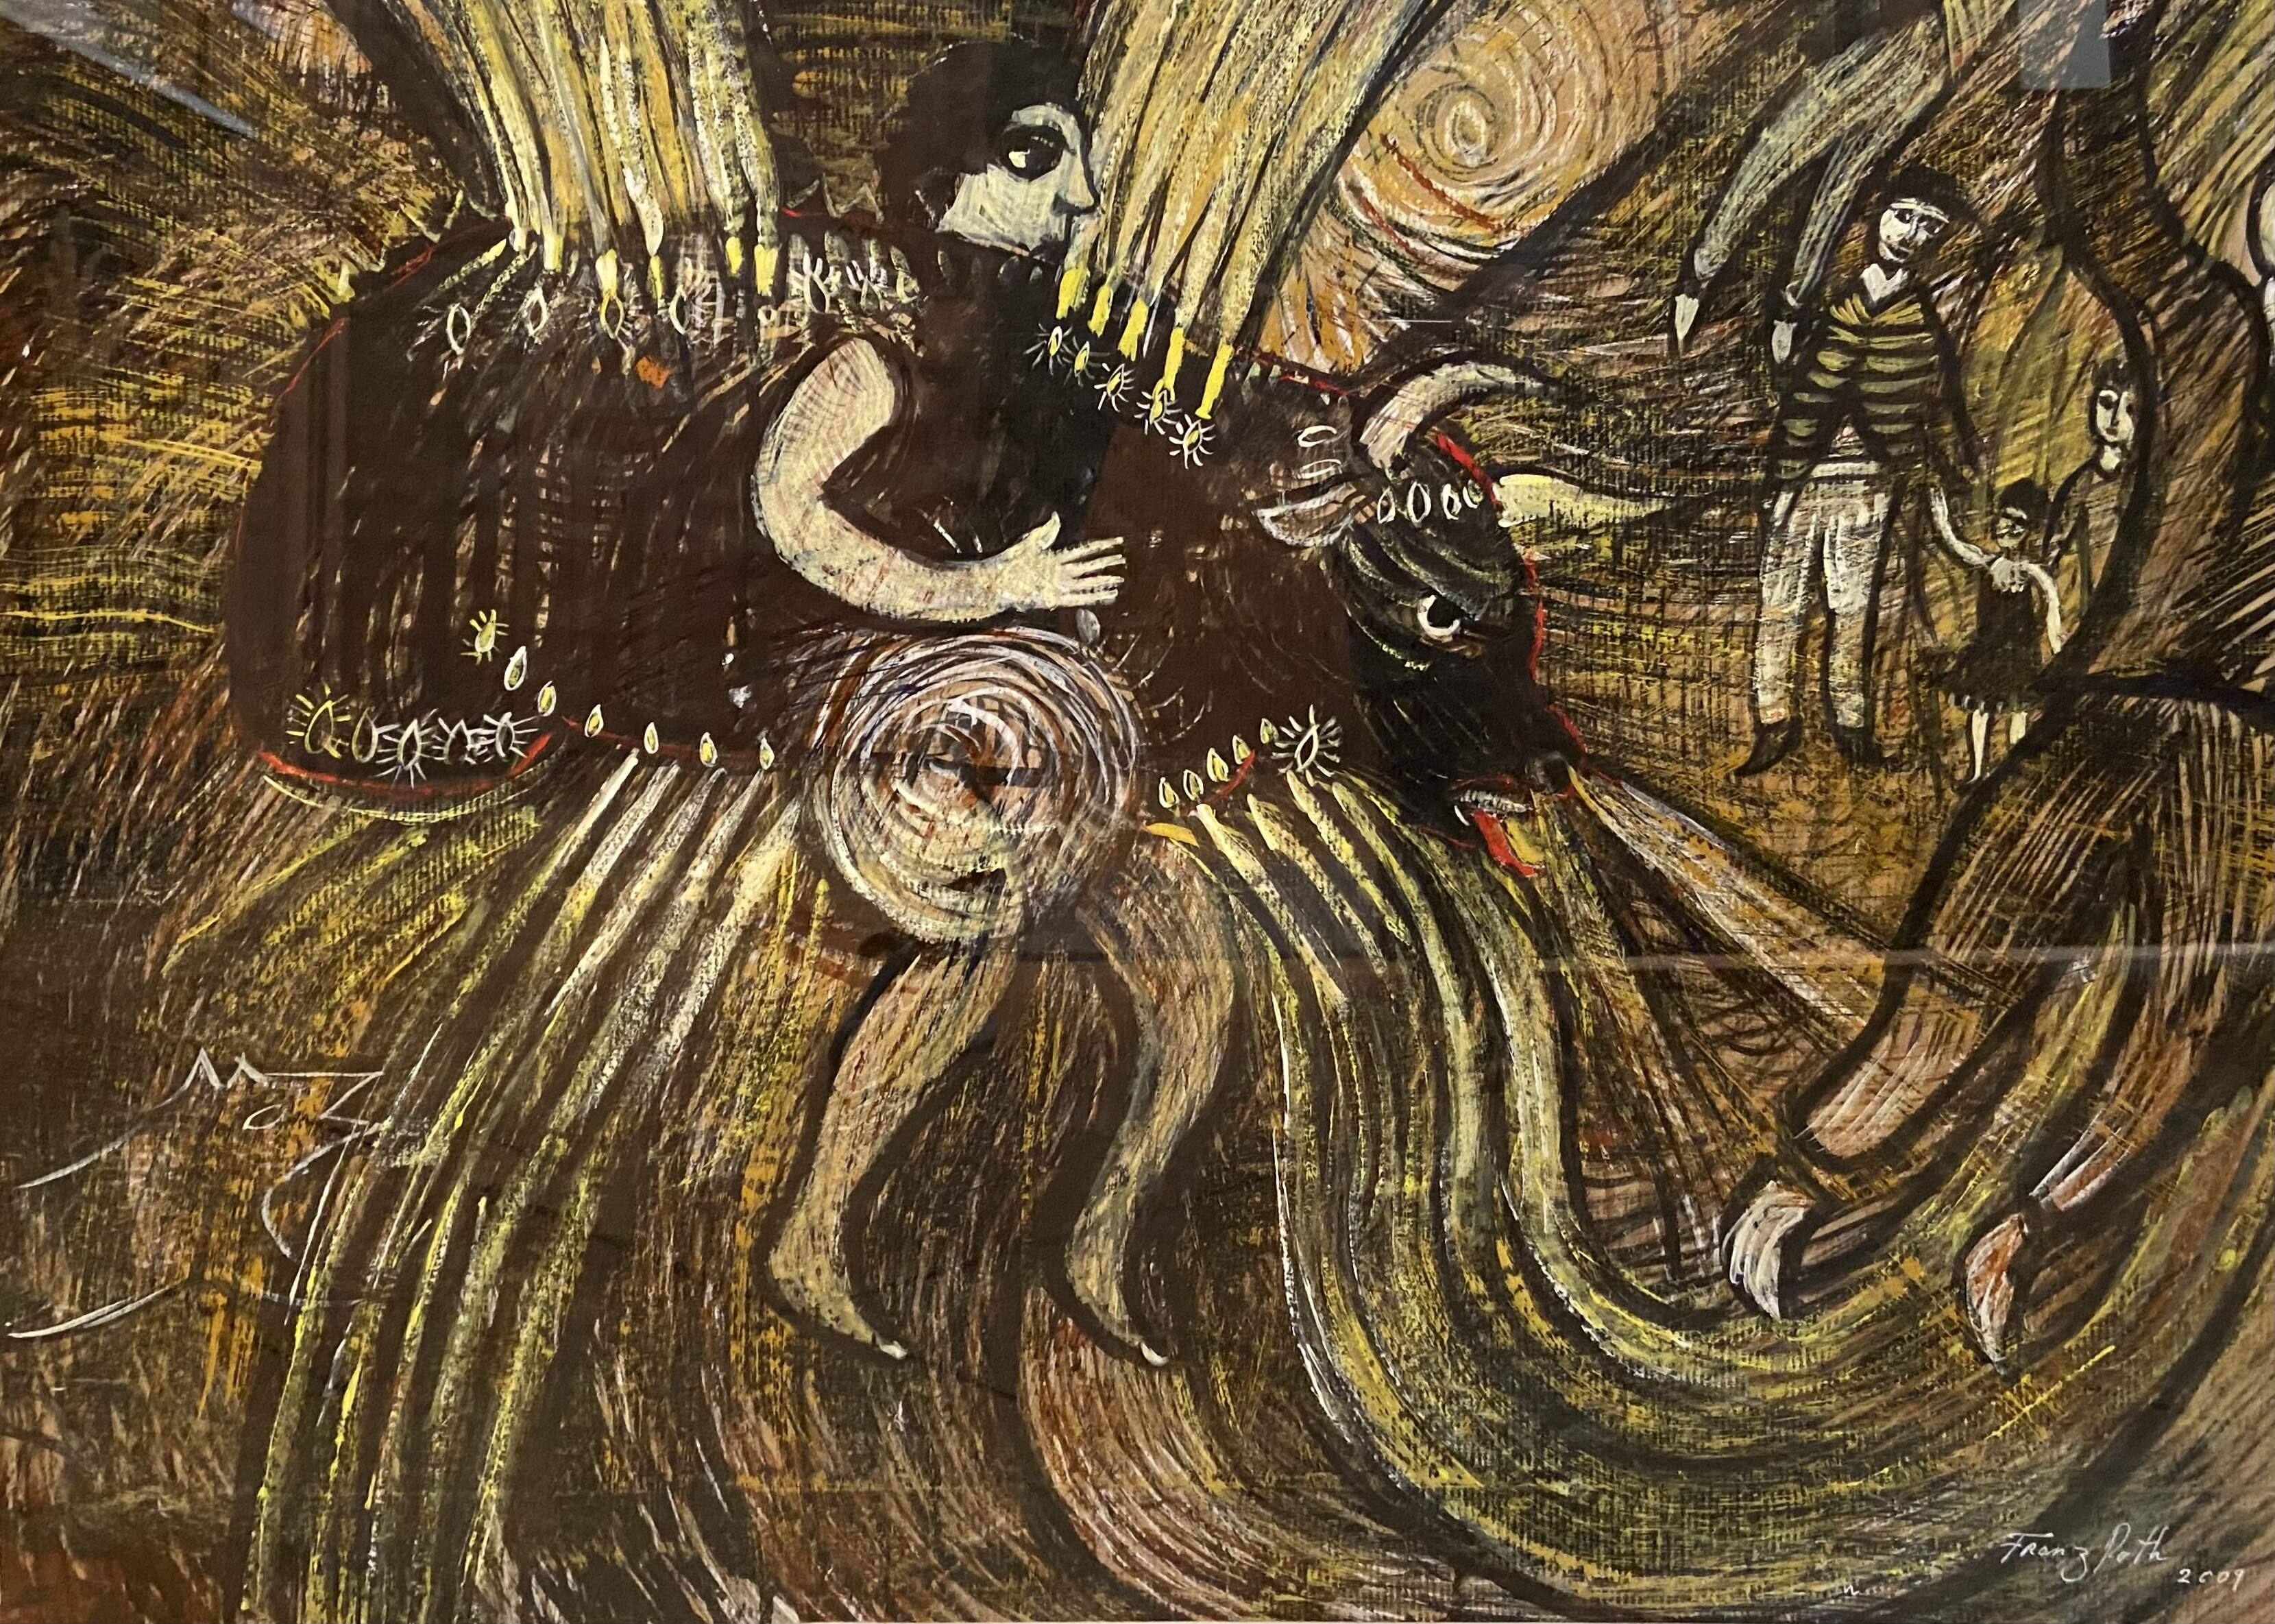 FRANZ ROTH, El Toro, 2009, Tinte und Gouache auf Papier, 60 x 80 cm